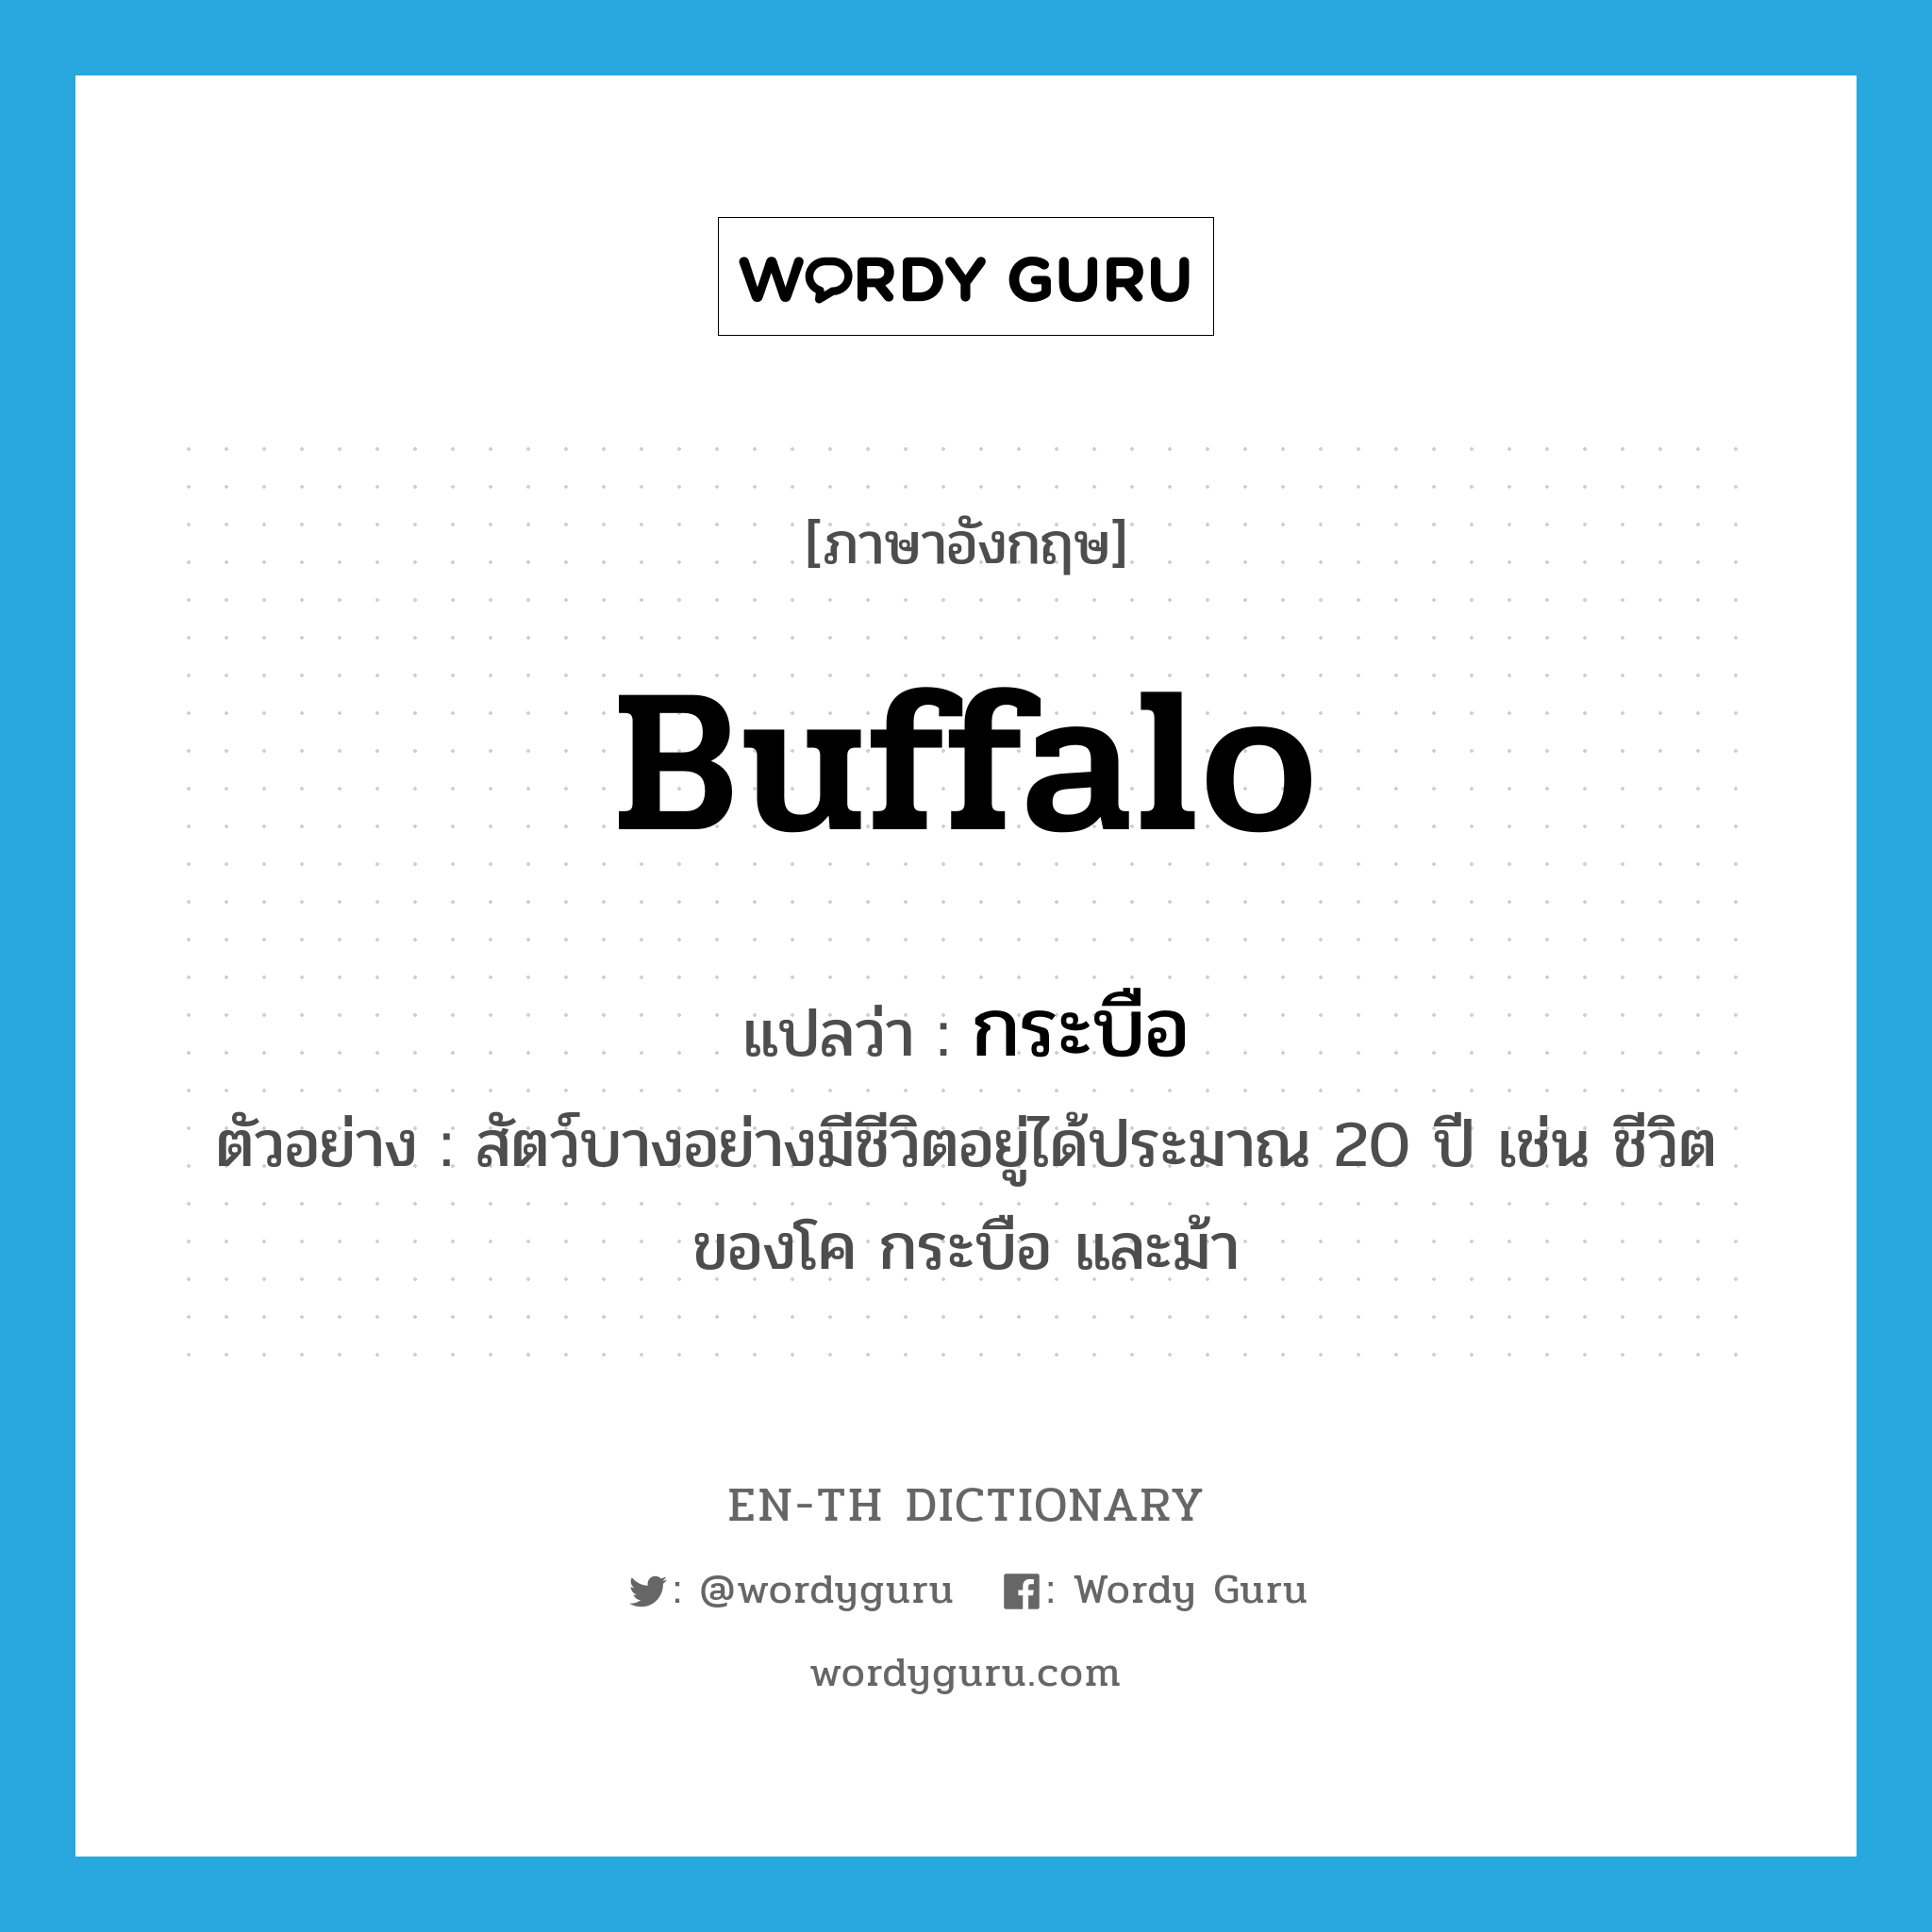 buffalo แปลว่า?, คำศัพท์ภาษาอังกฤษ buffalo แปลว่า กระบือ ประเภท N ตัวอย่าง สัตว์บางอย่างมีชีวิตอยู่ได้ประมาณ 20 ปี เช่น ชีวิตของโค กระบือ และม้า หมวด N